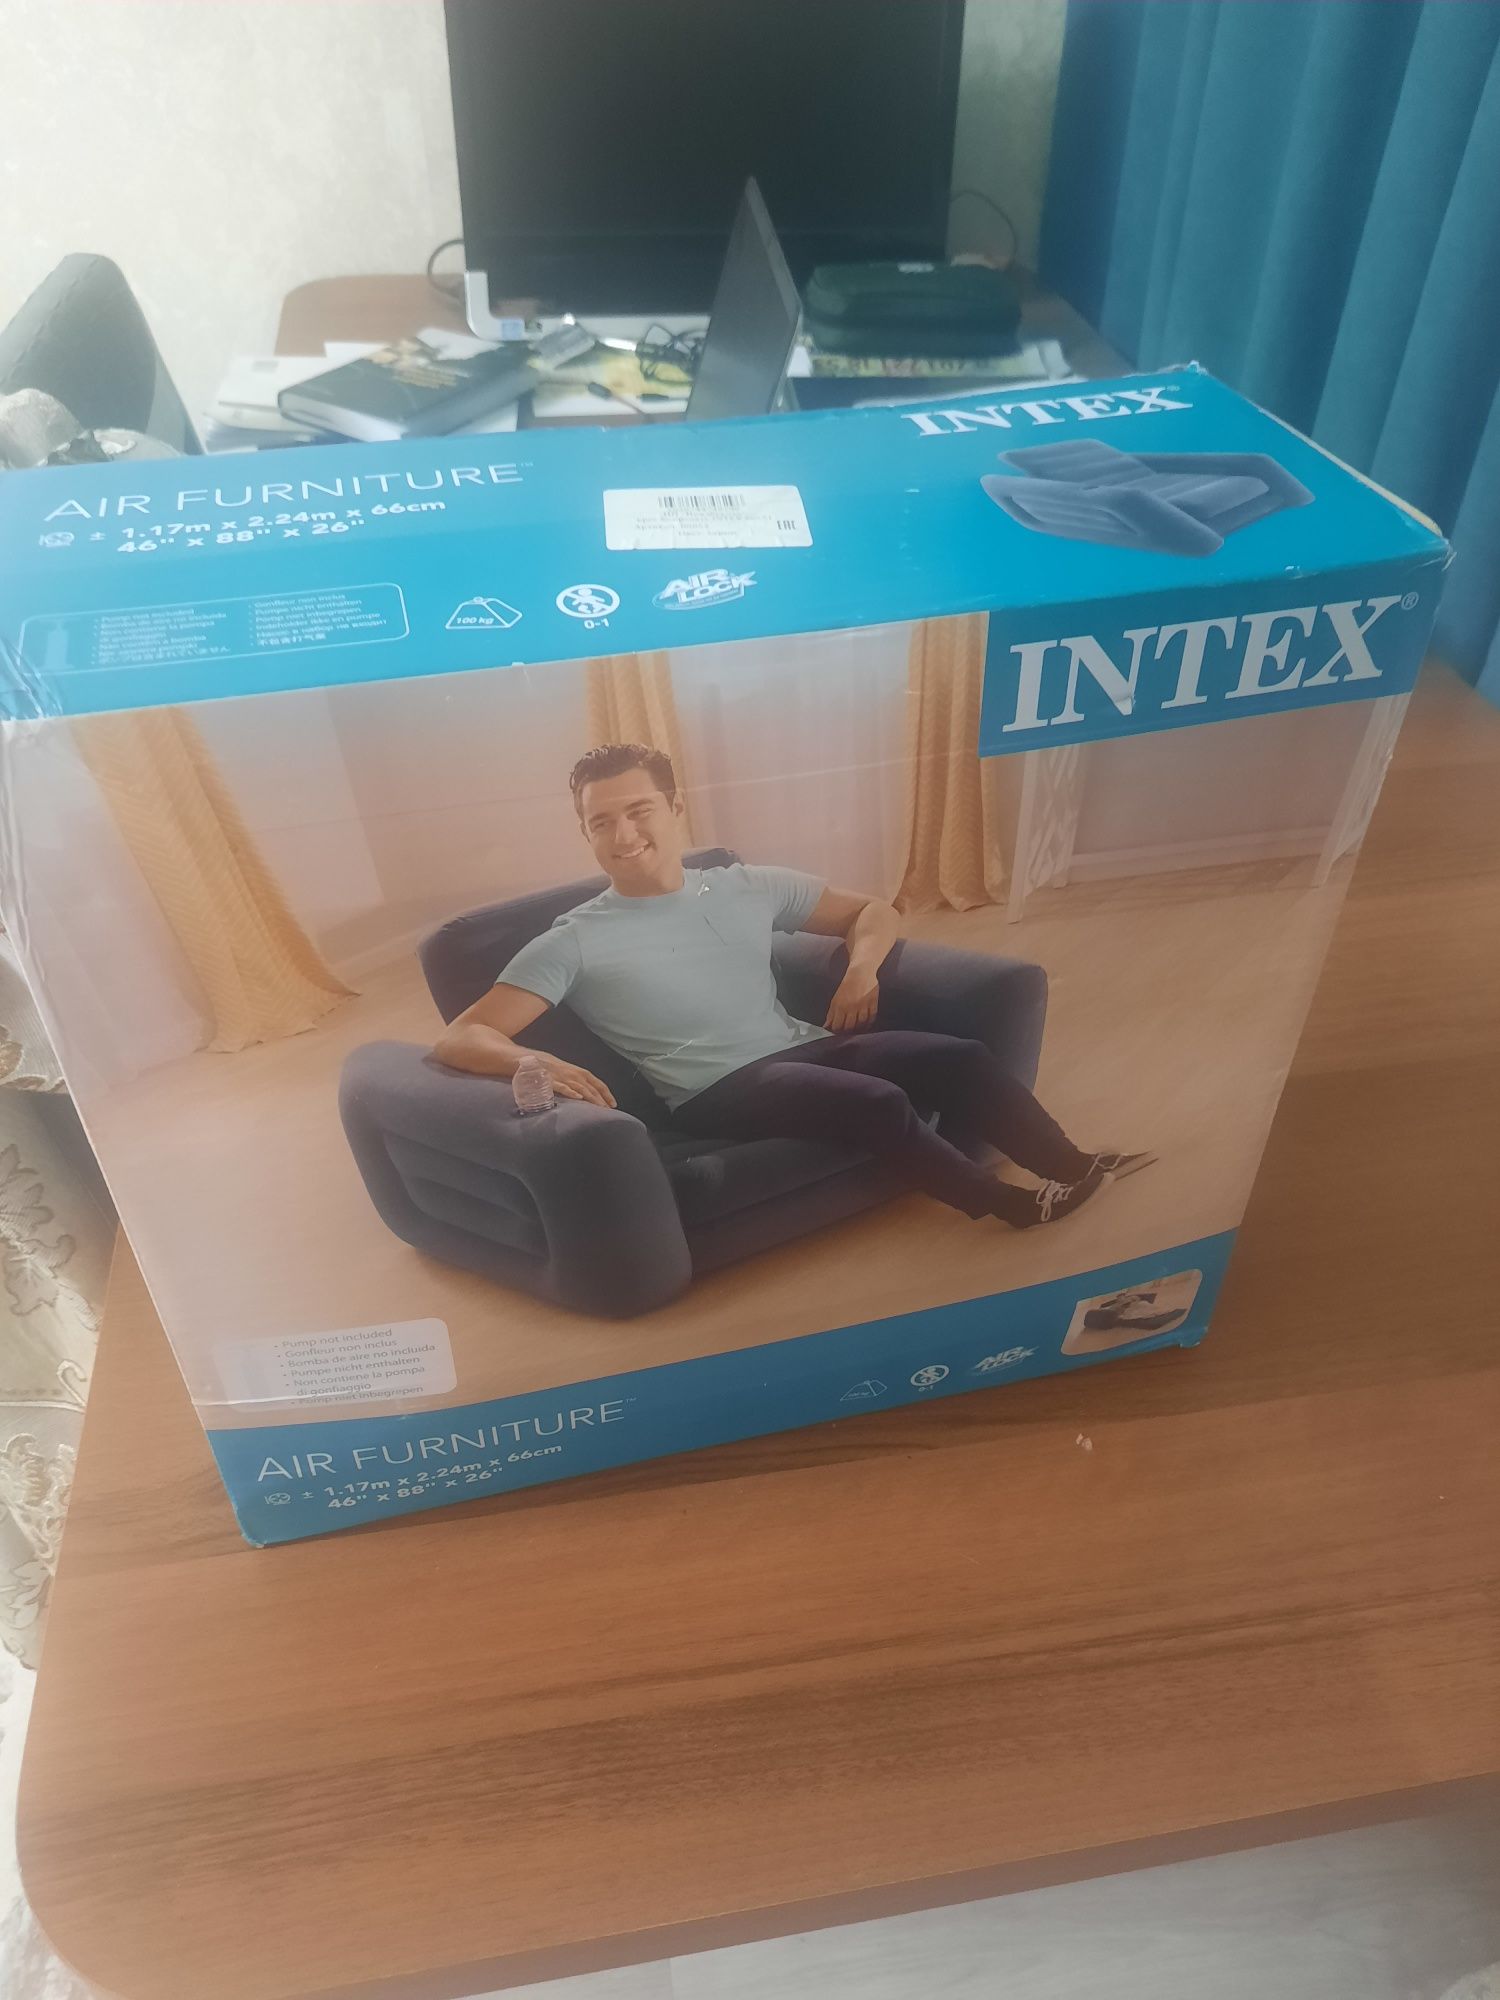 Надувное кресло кровать Intex 66551